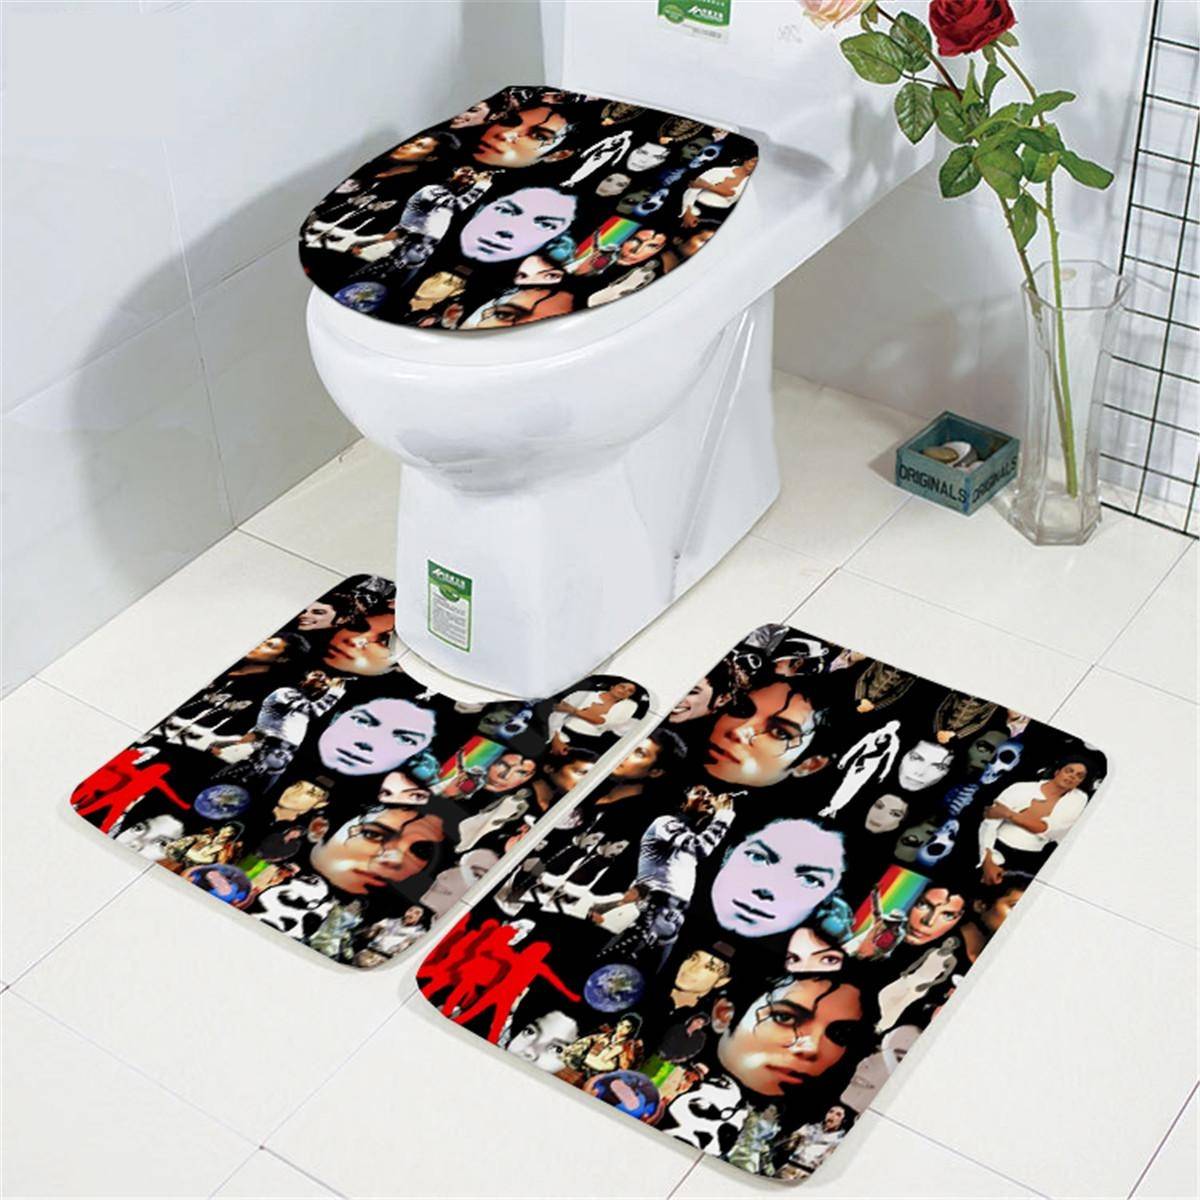 Michael Jackson pattern 3D printed Bathroom Set Bathroom cb5feb1b7314637725a2e7: 1|2|4|6